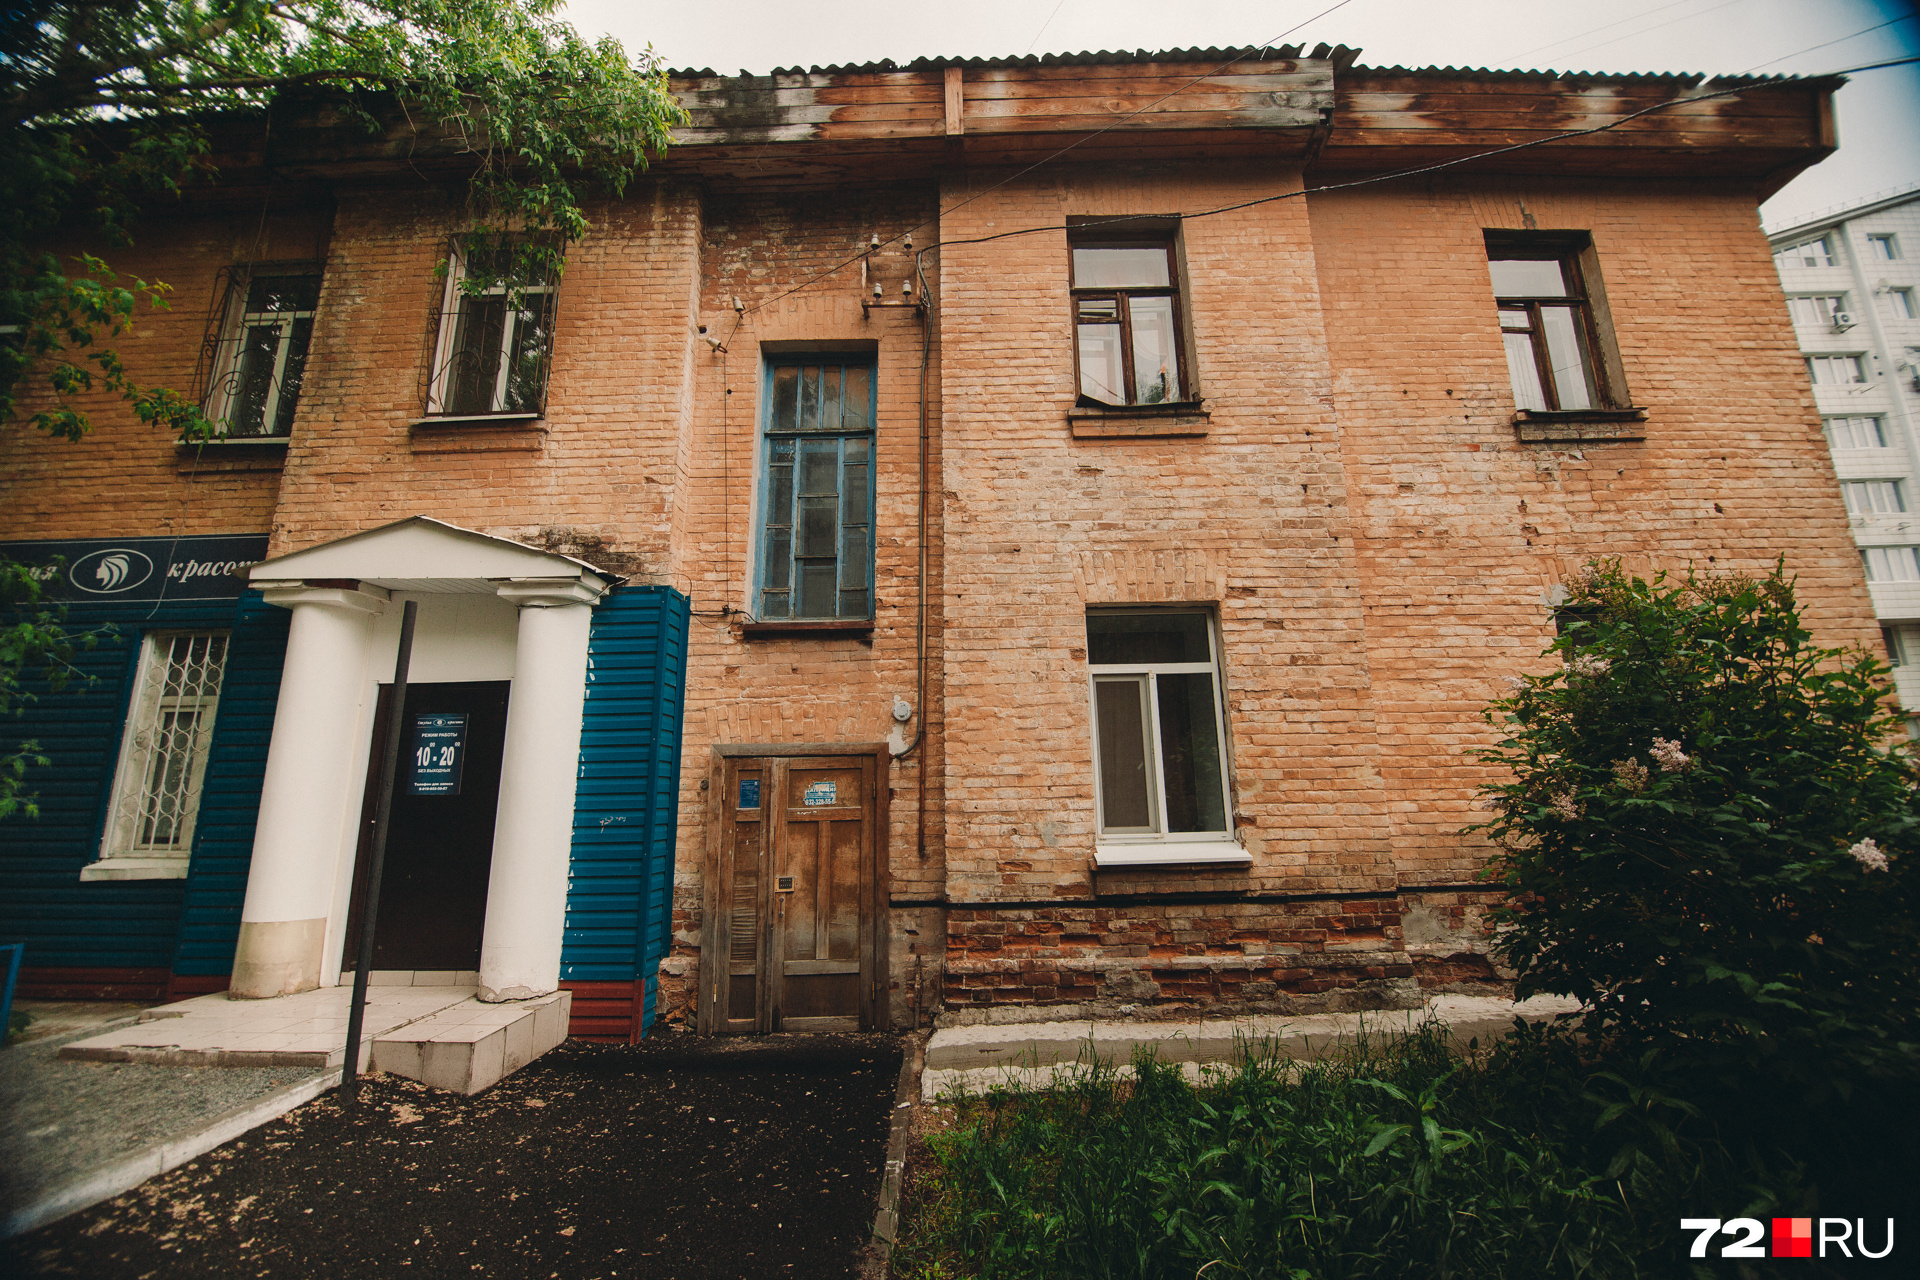 Жилой дом построили из кирпичей текутьевского театра